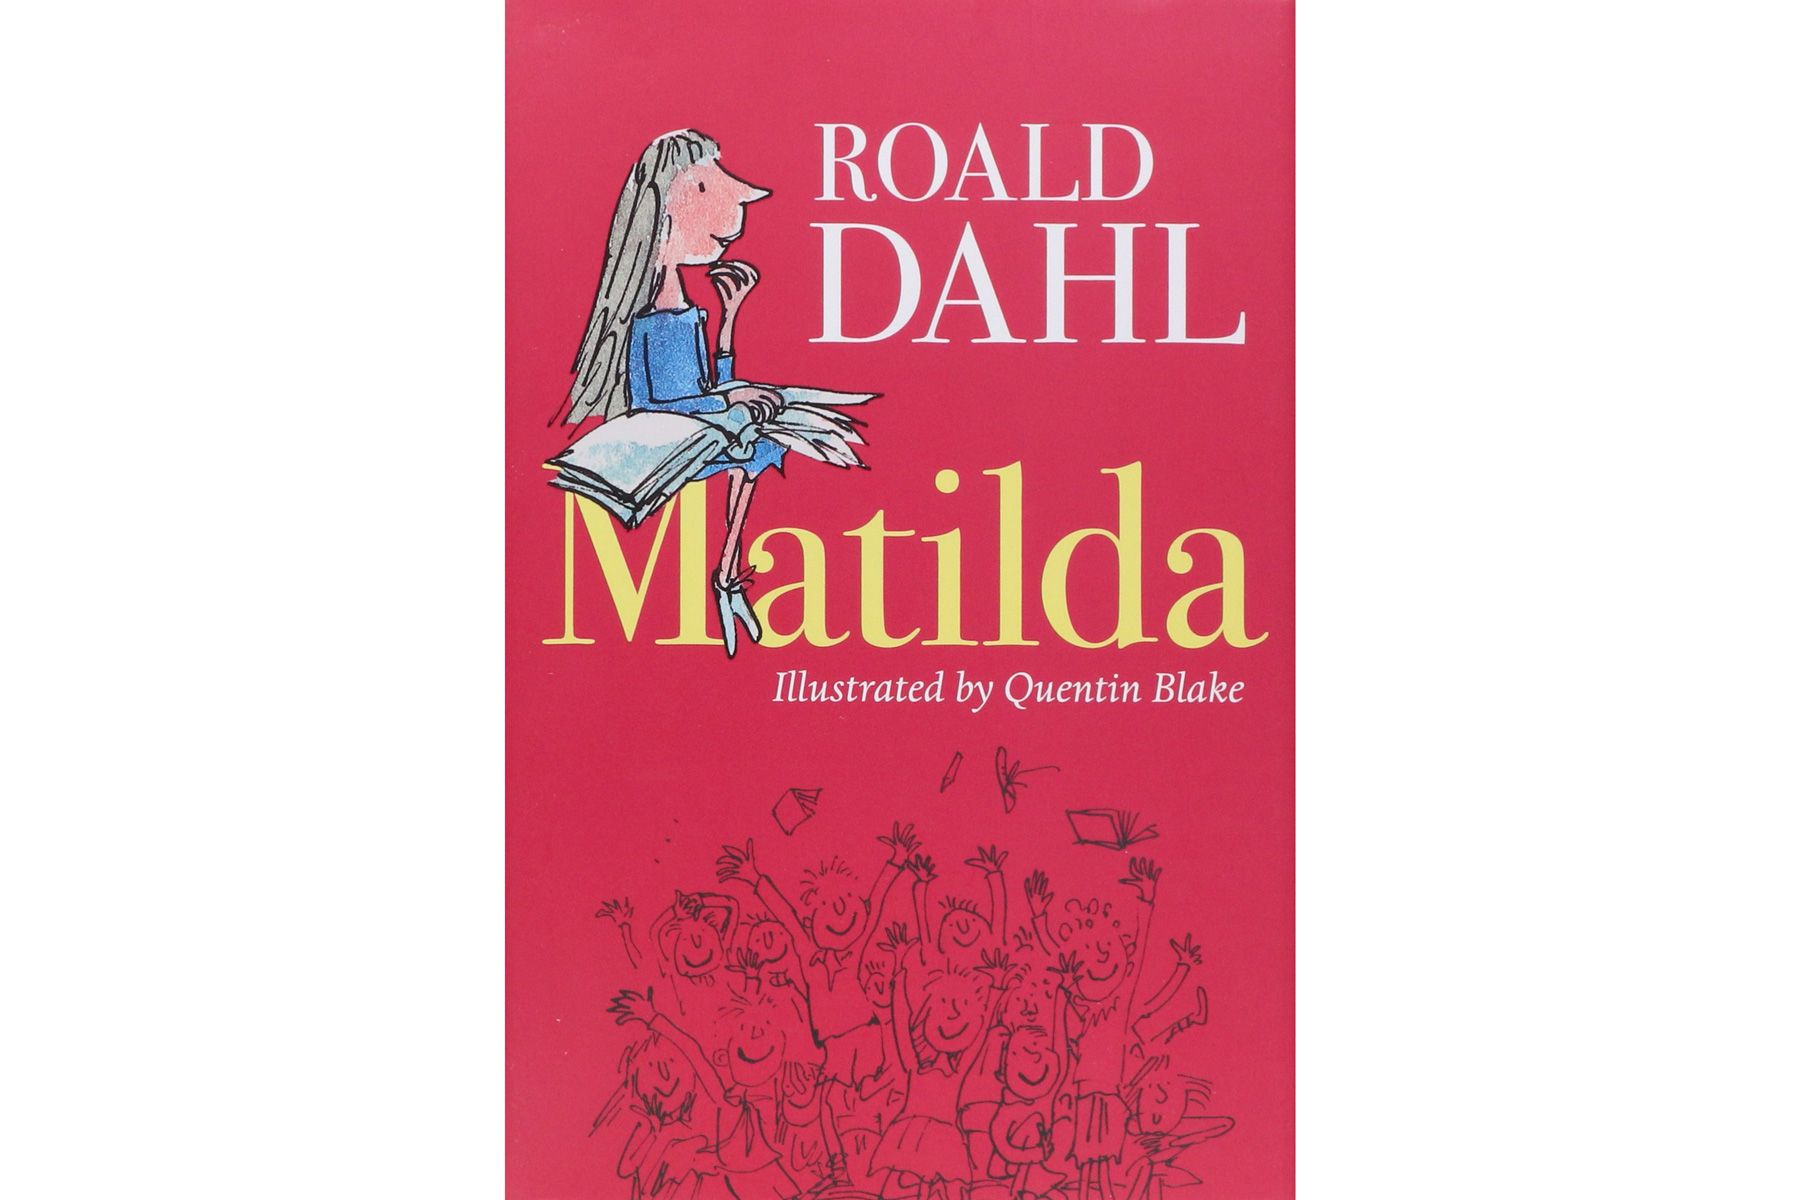 Matilda, eftir Roald Dahl